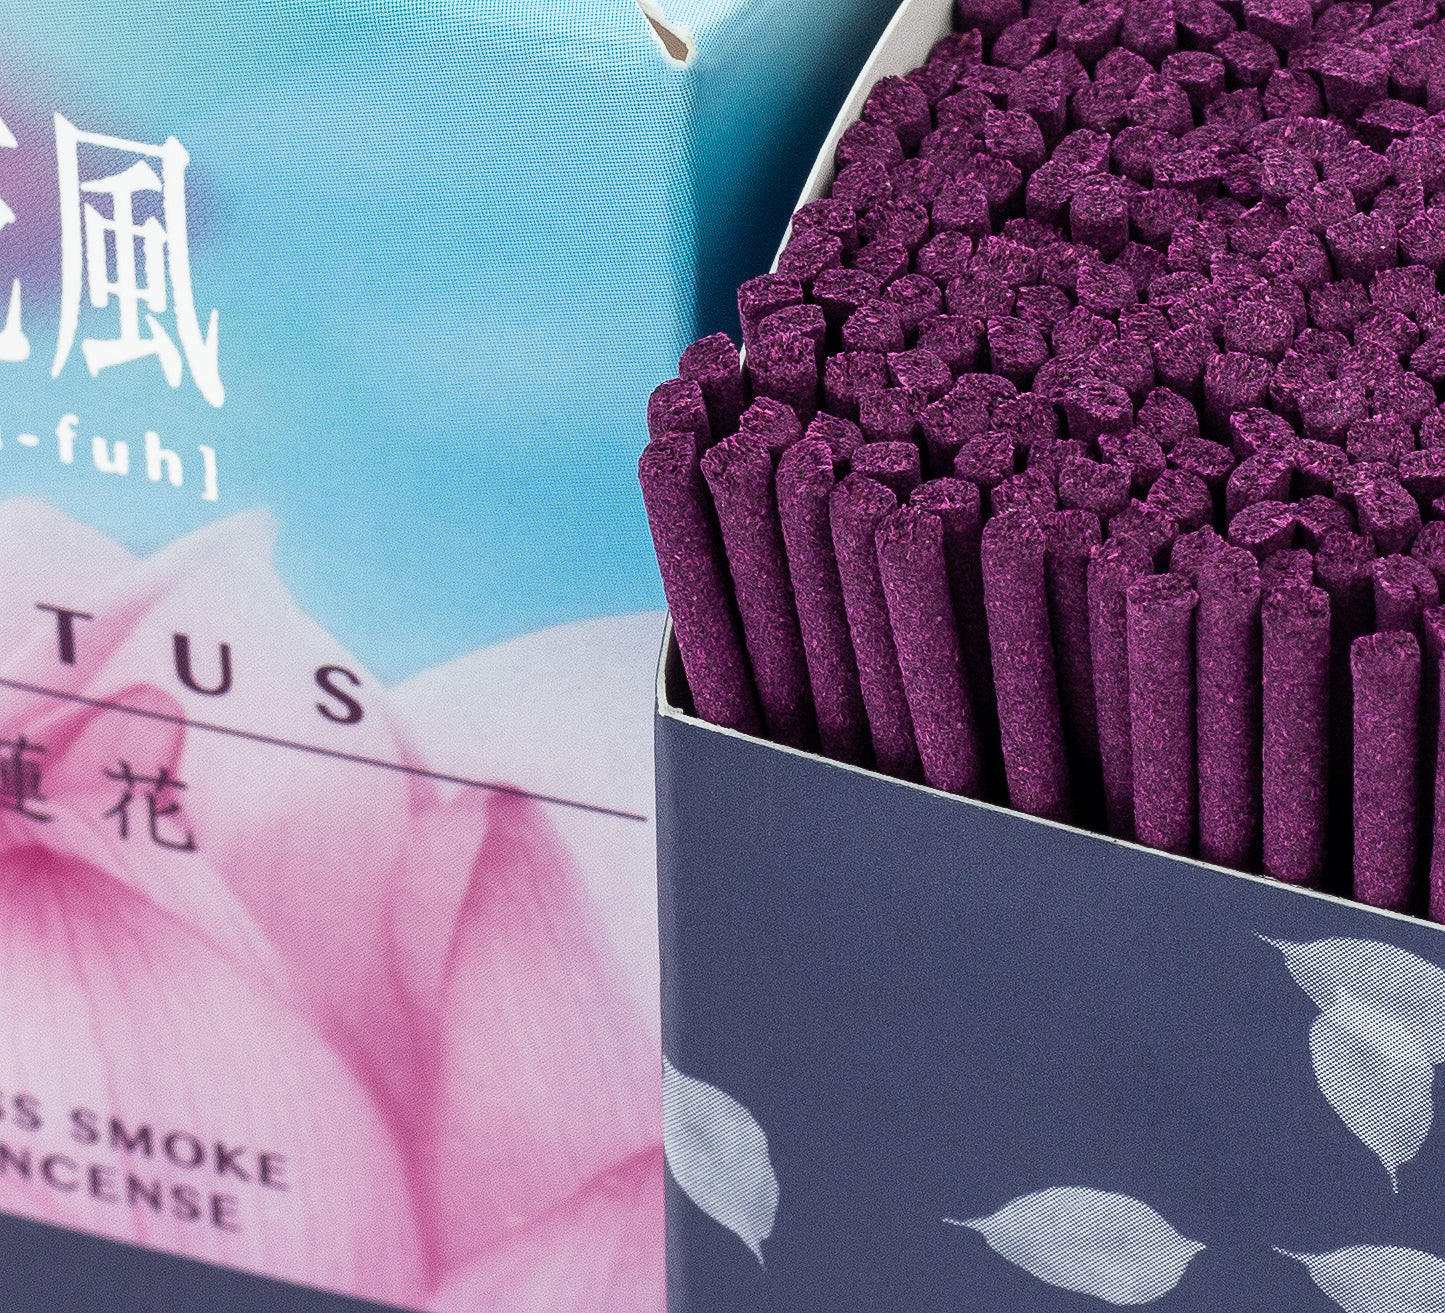 Ka-fuh Incense - Lotus, Short